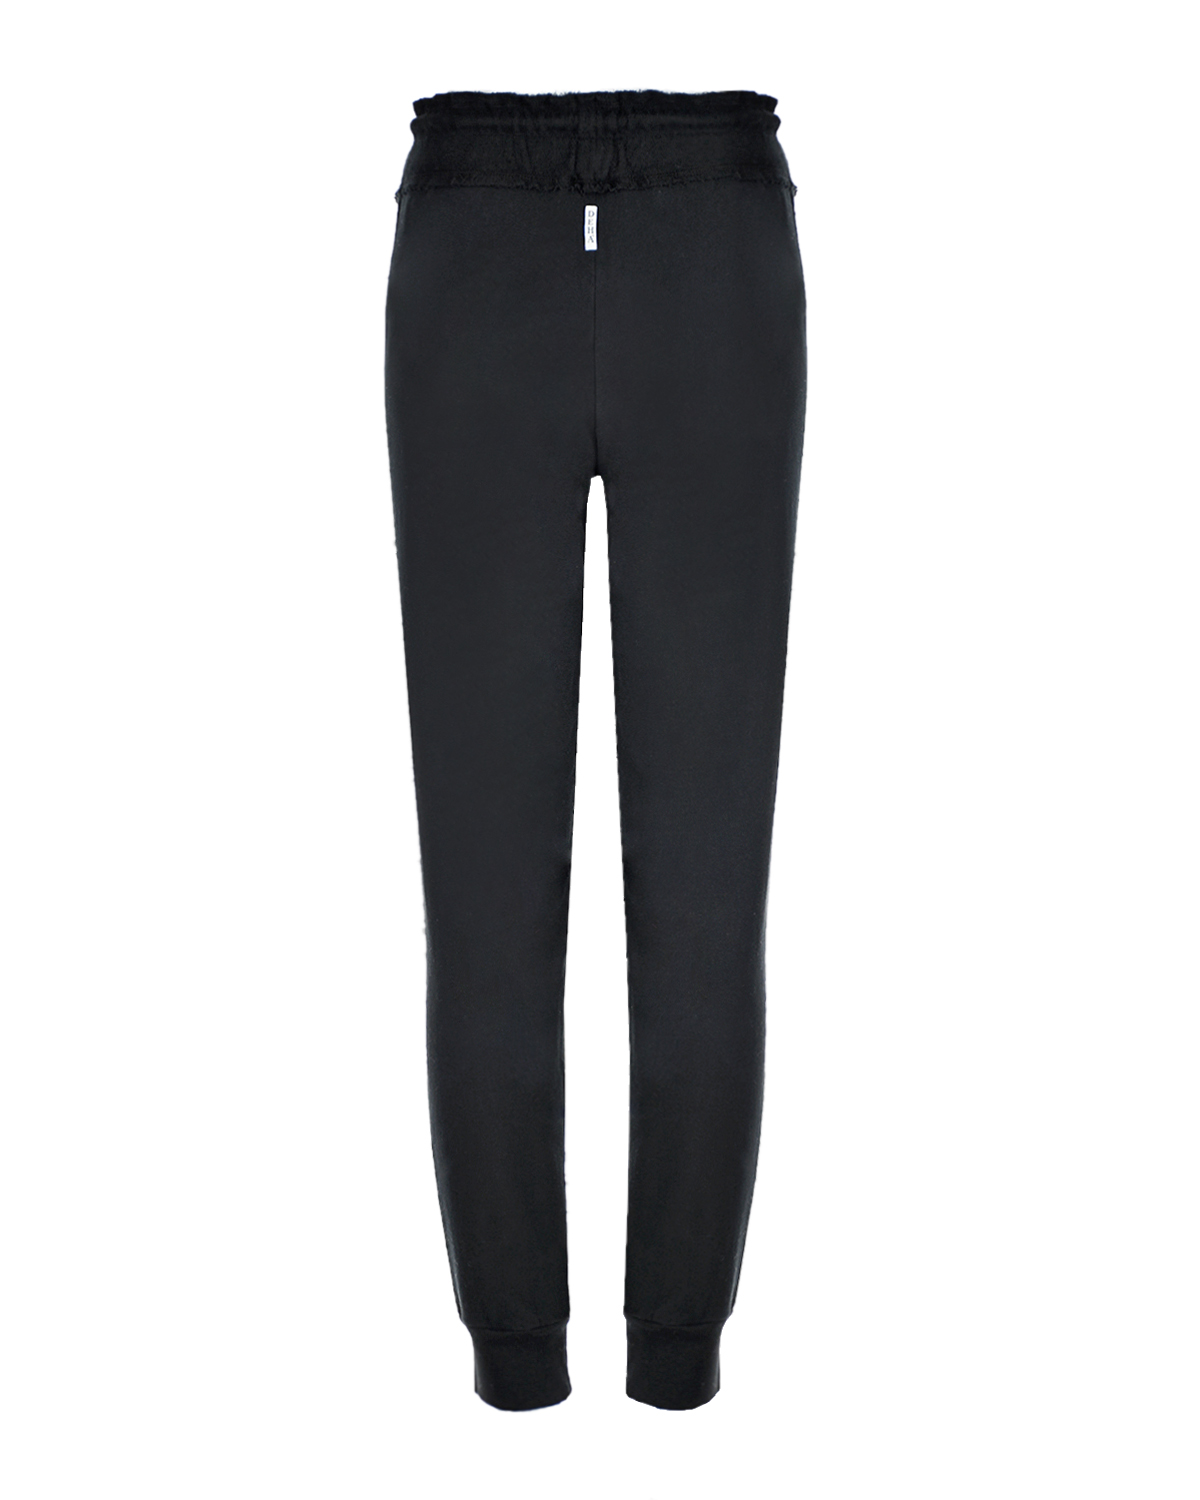 Черные спортивные брюки из хлопка Deha, размер 40, цвет черный - фото 2